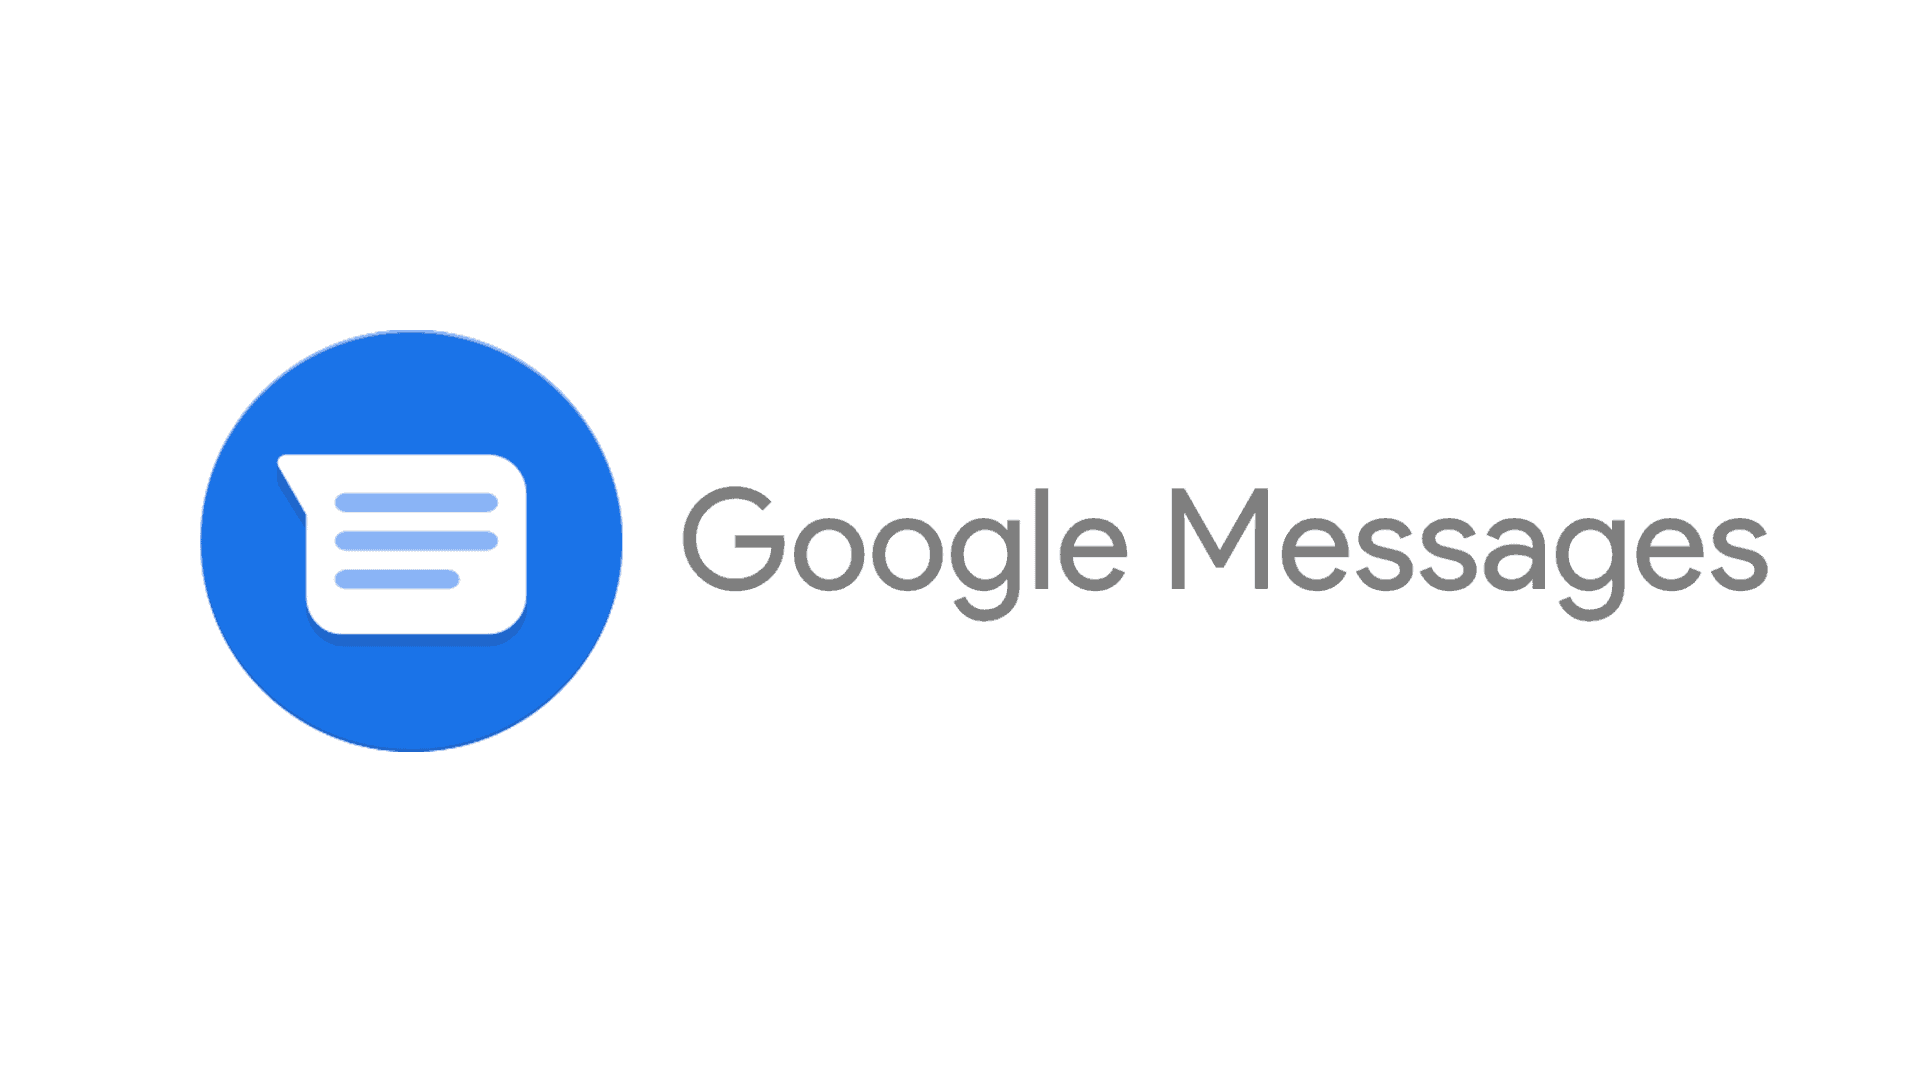 Google Messages Text Field